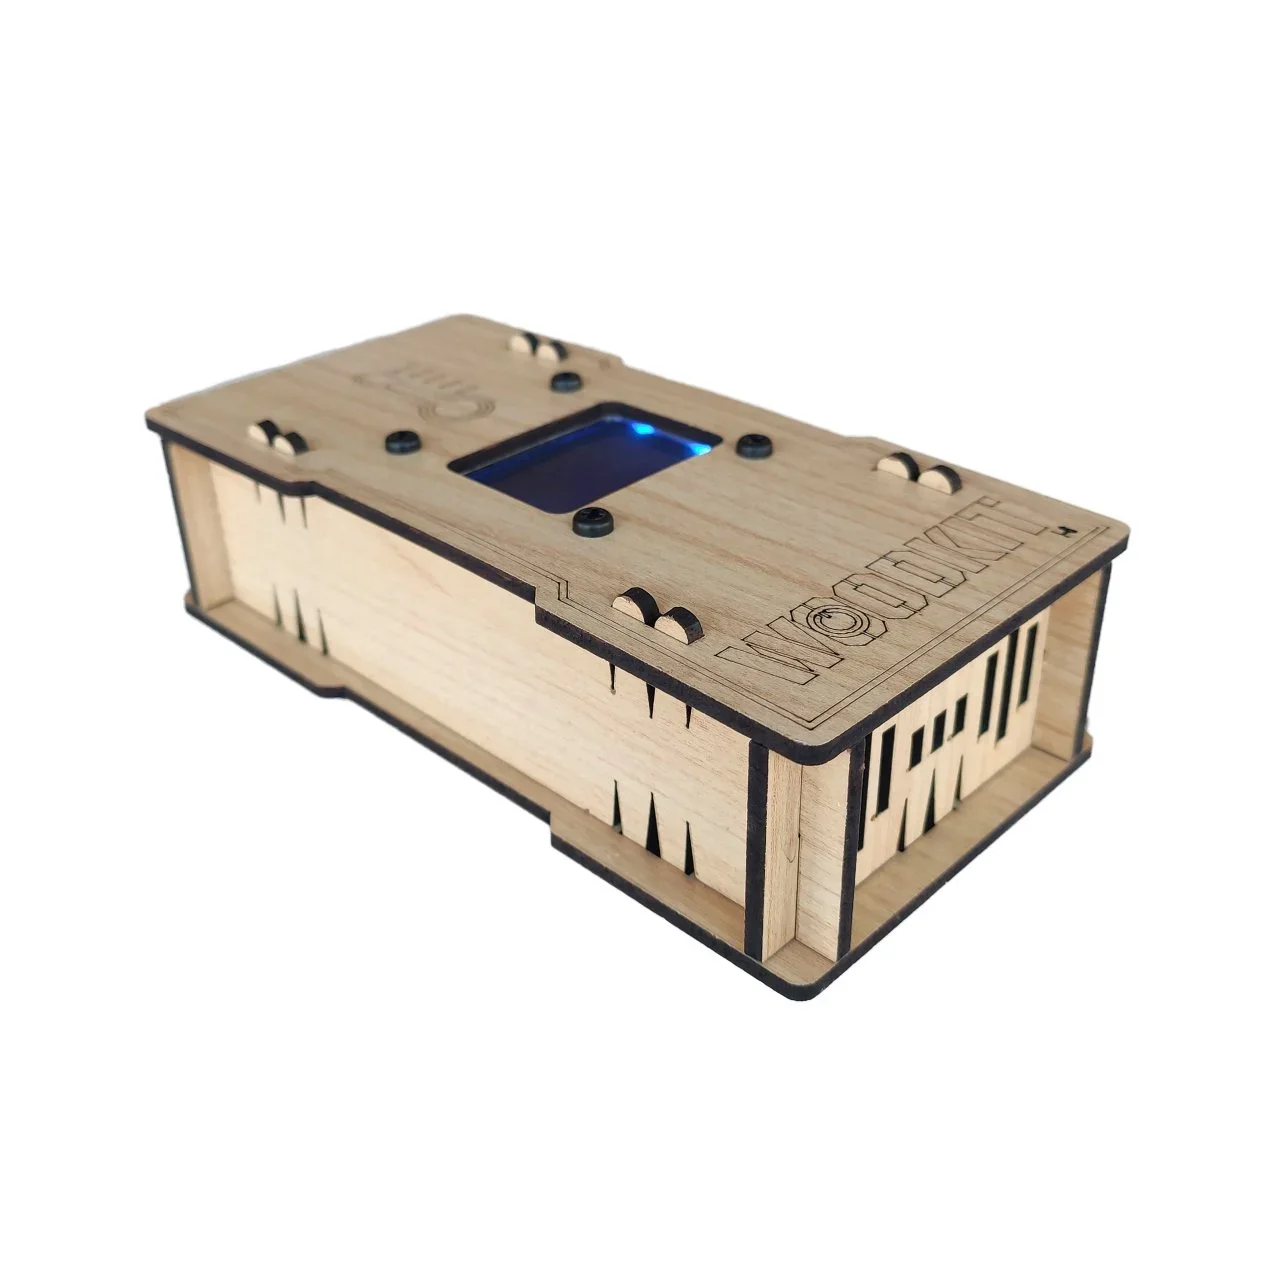 Wood-Kit Robotik Kodlama kiti - Dijital Termometre - Thumbnail